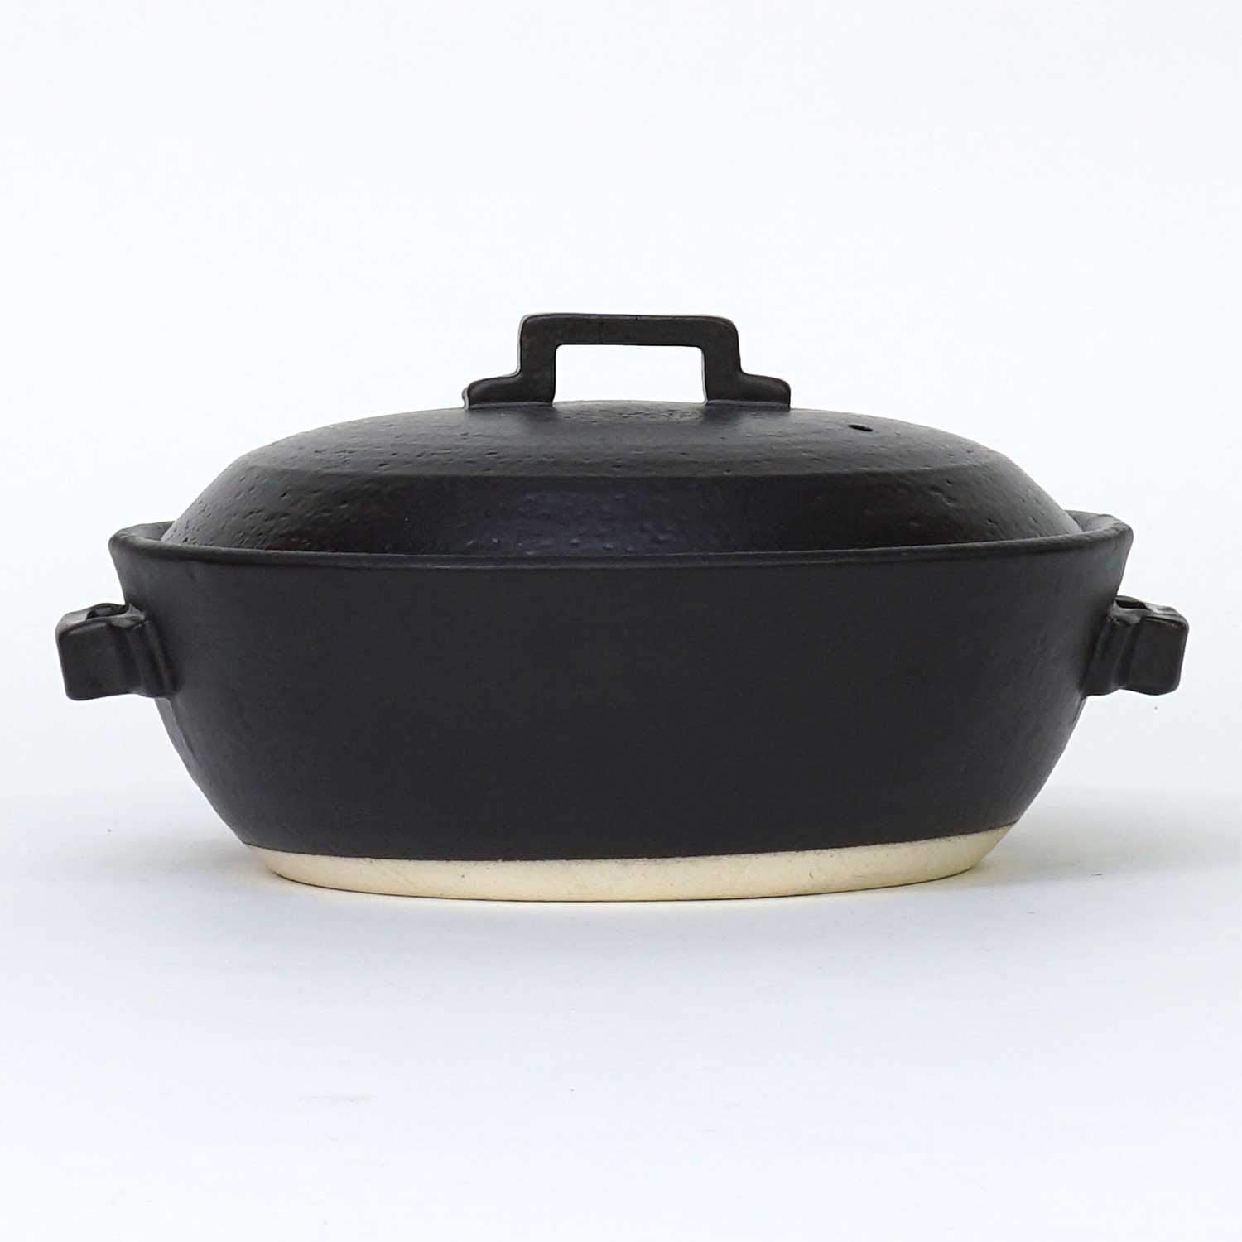 マルヨシ陶器(Maruyoshitouki) 土鍋 STYLE BLACK M0183の商品画像サムネ2 